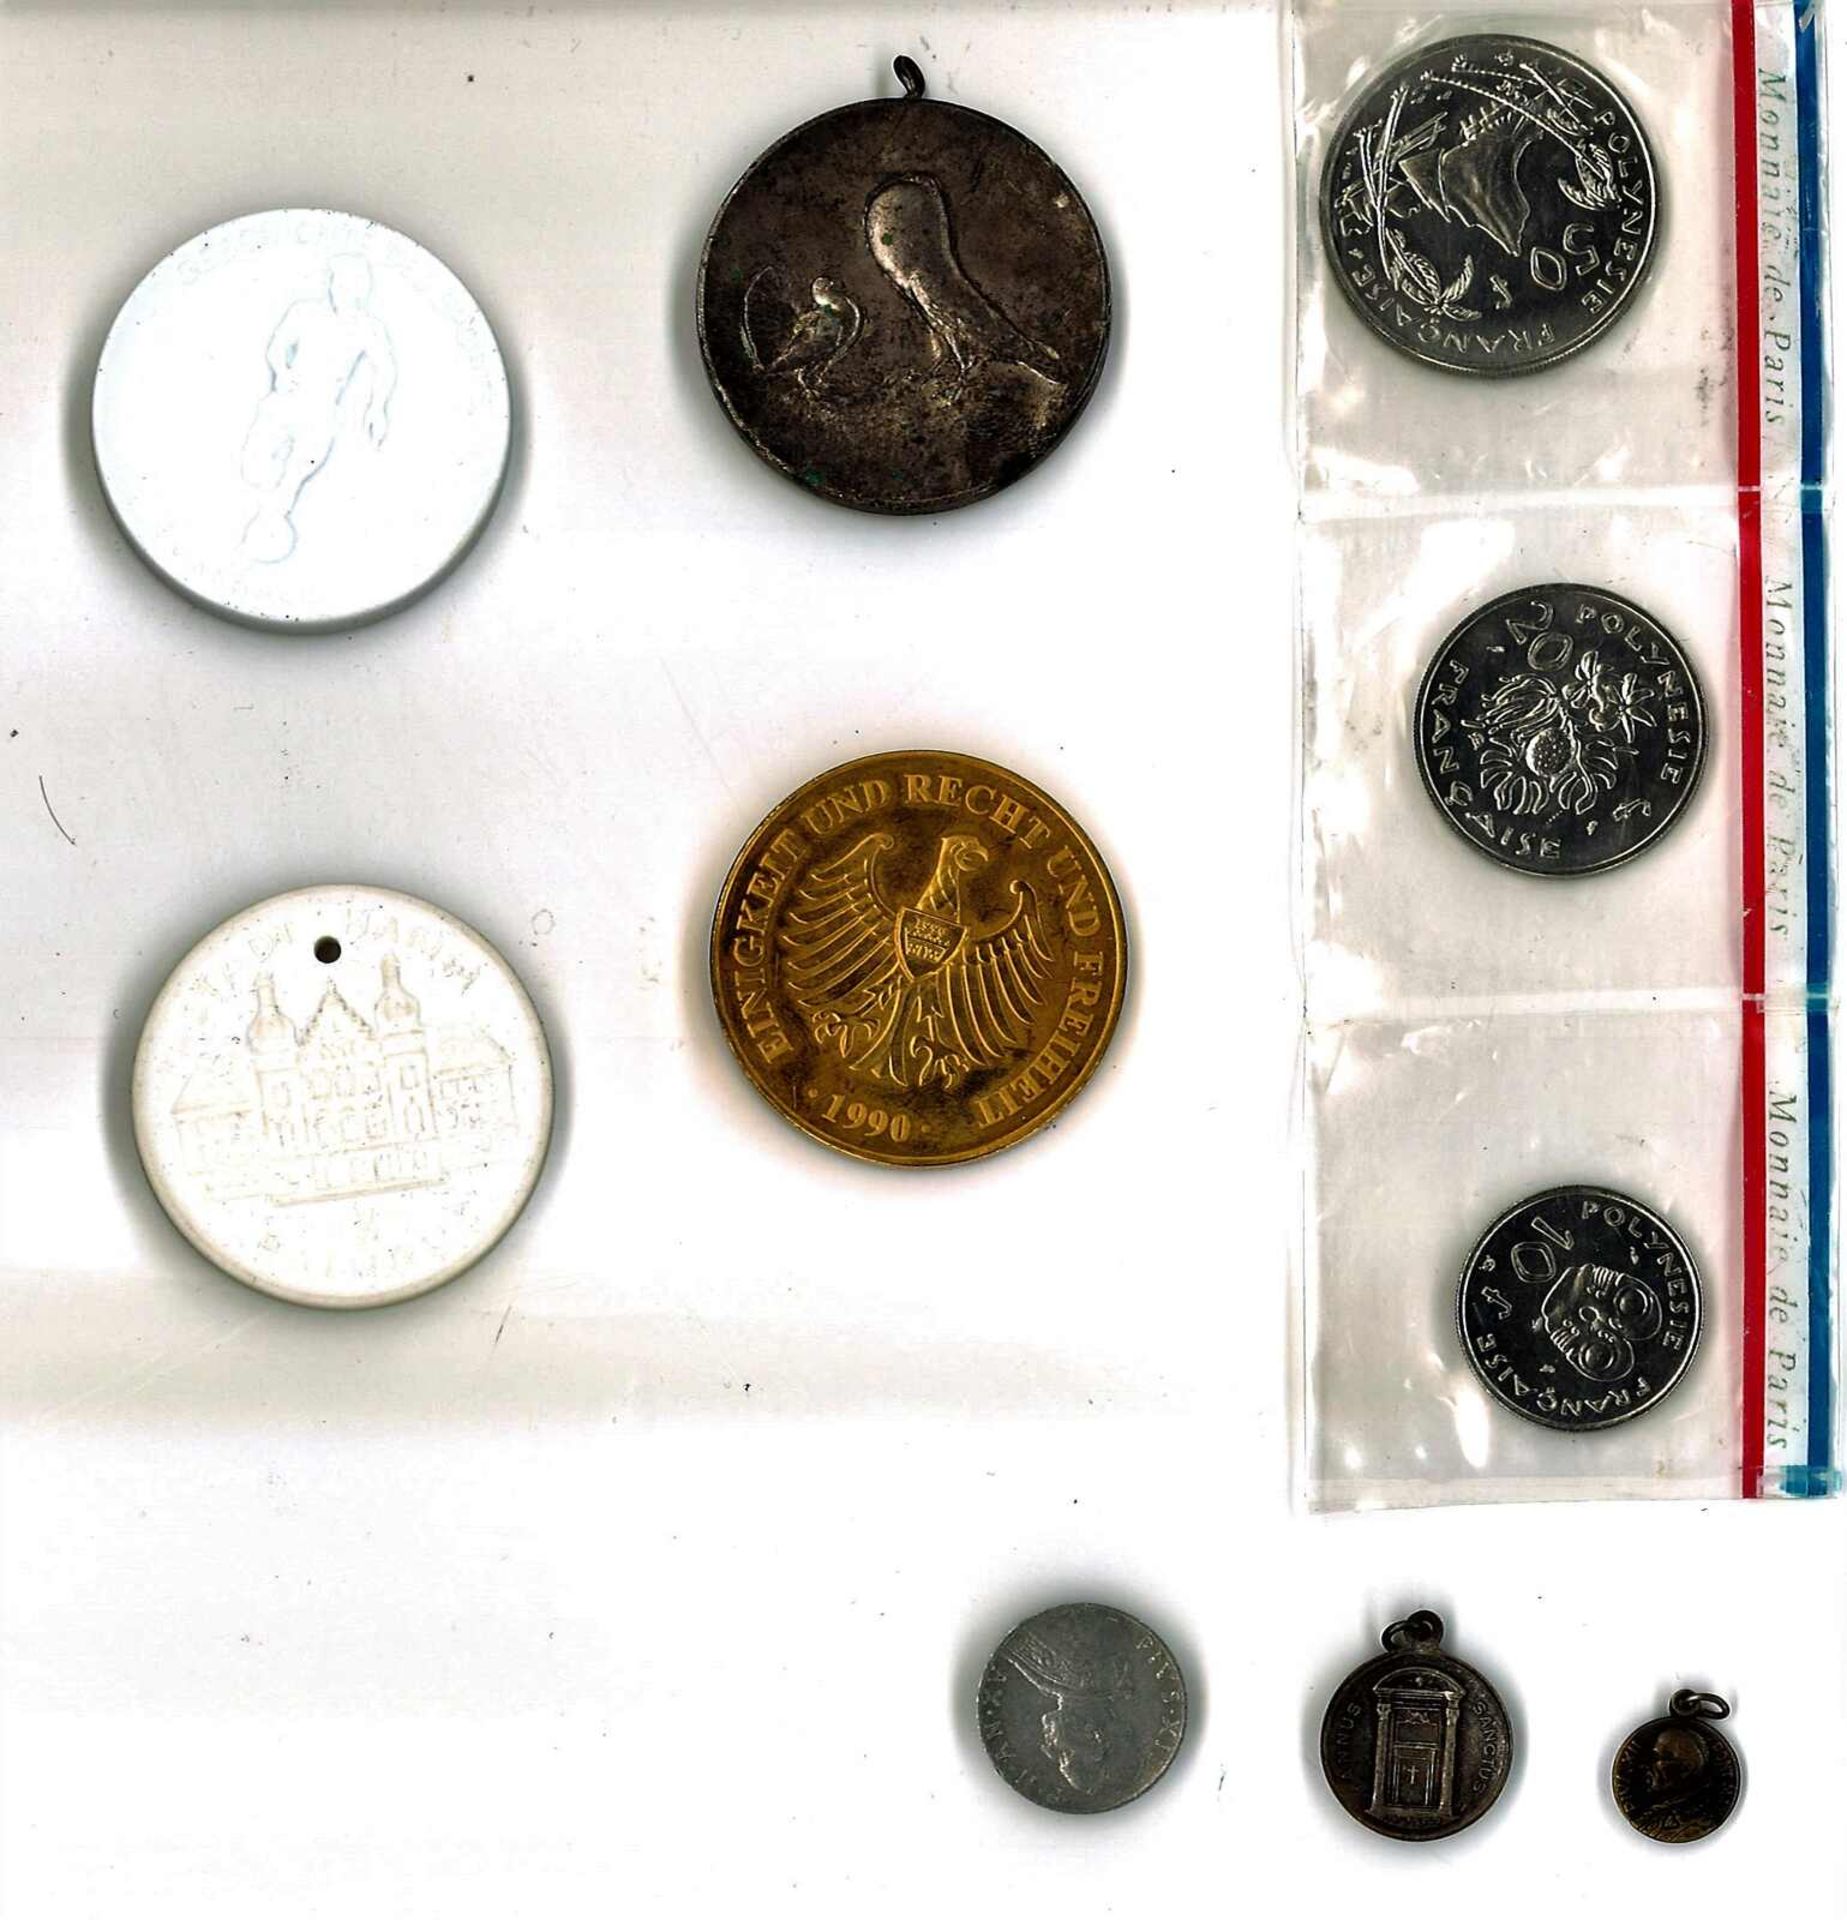 Lot Münzen und Medaillen alle Welt, dabei auch 2x Meissen, sowie 1 Münzsatz Frz. Polynesien, etc.